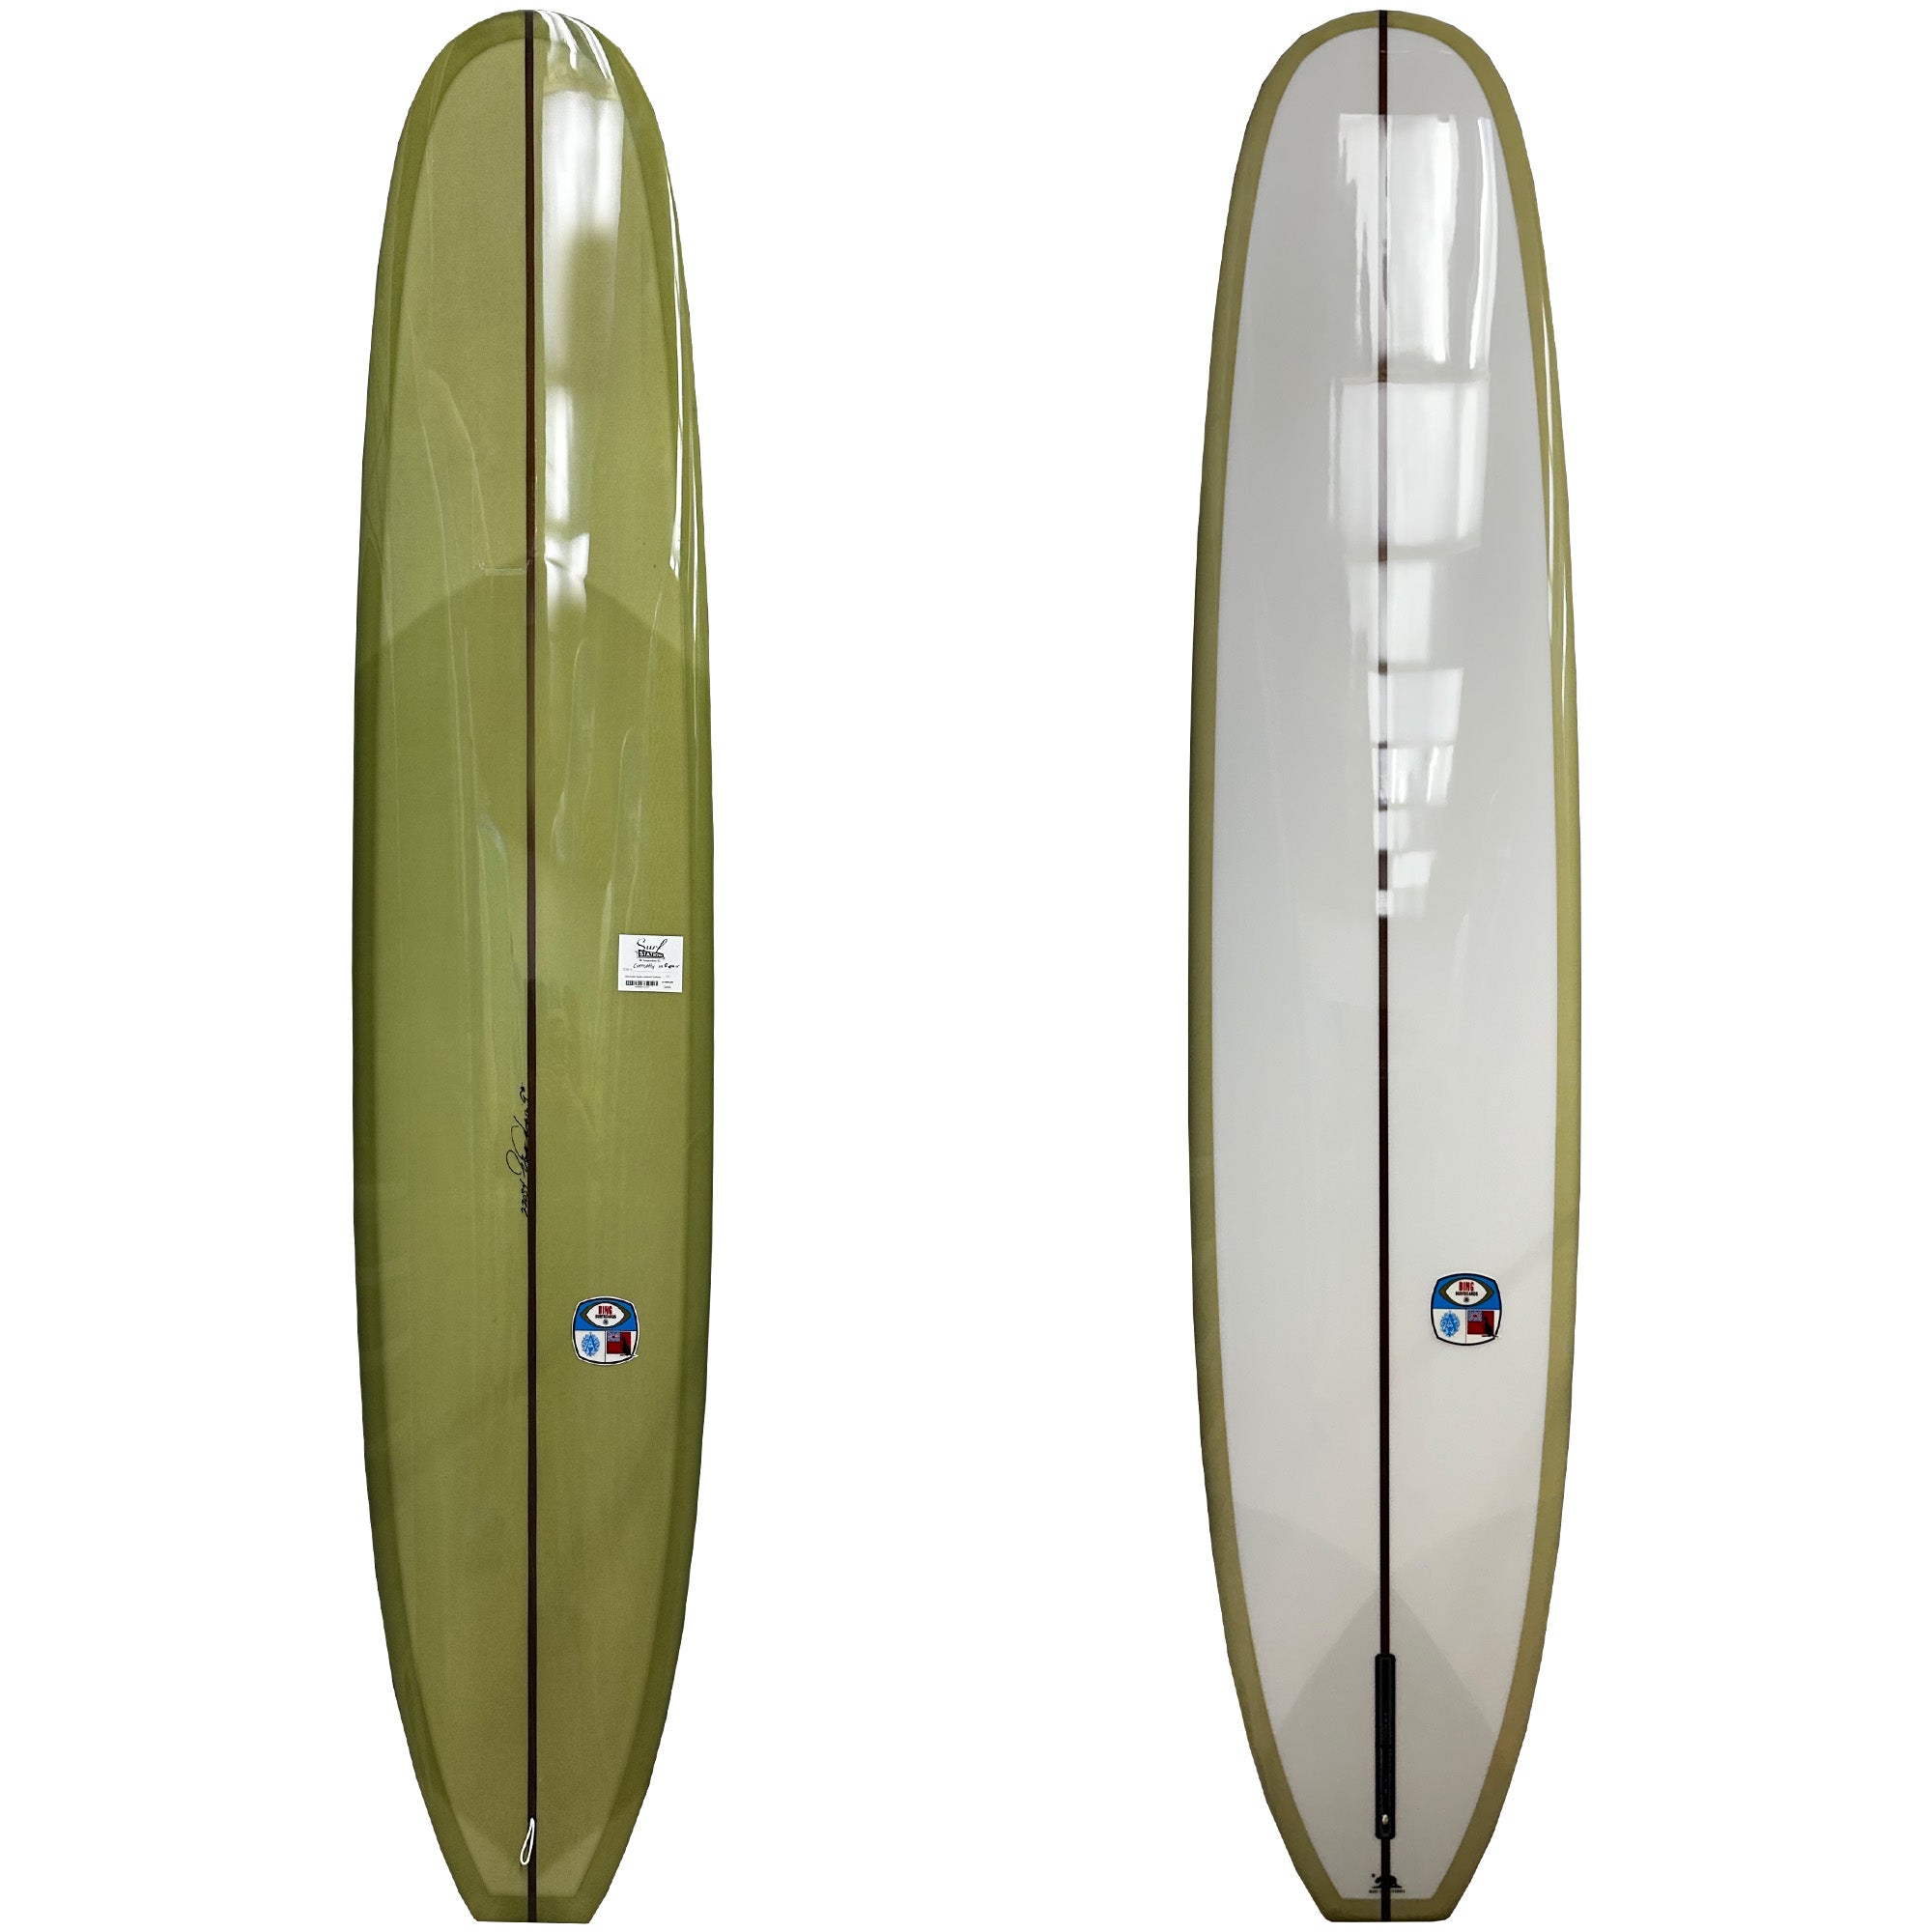 Bing Aussie Square Longboard Surfboard